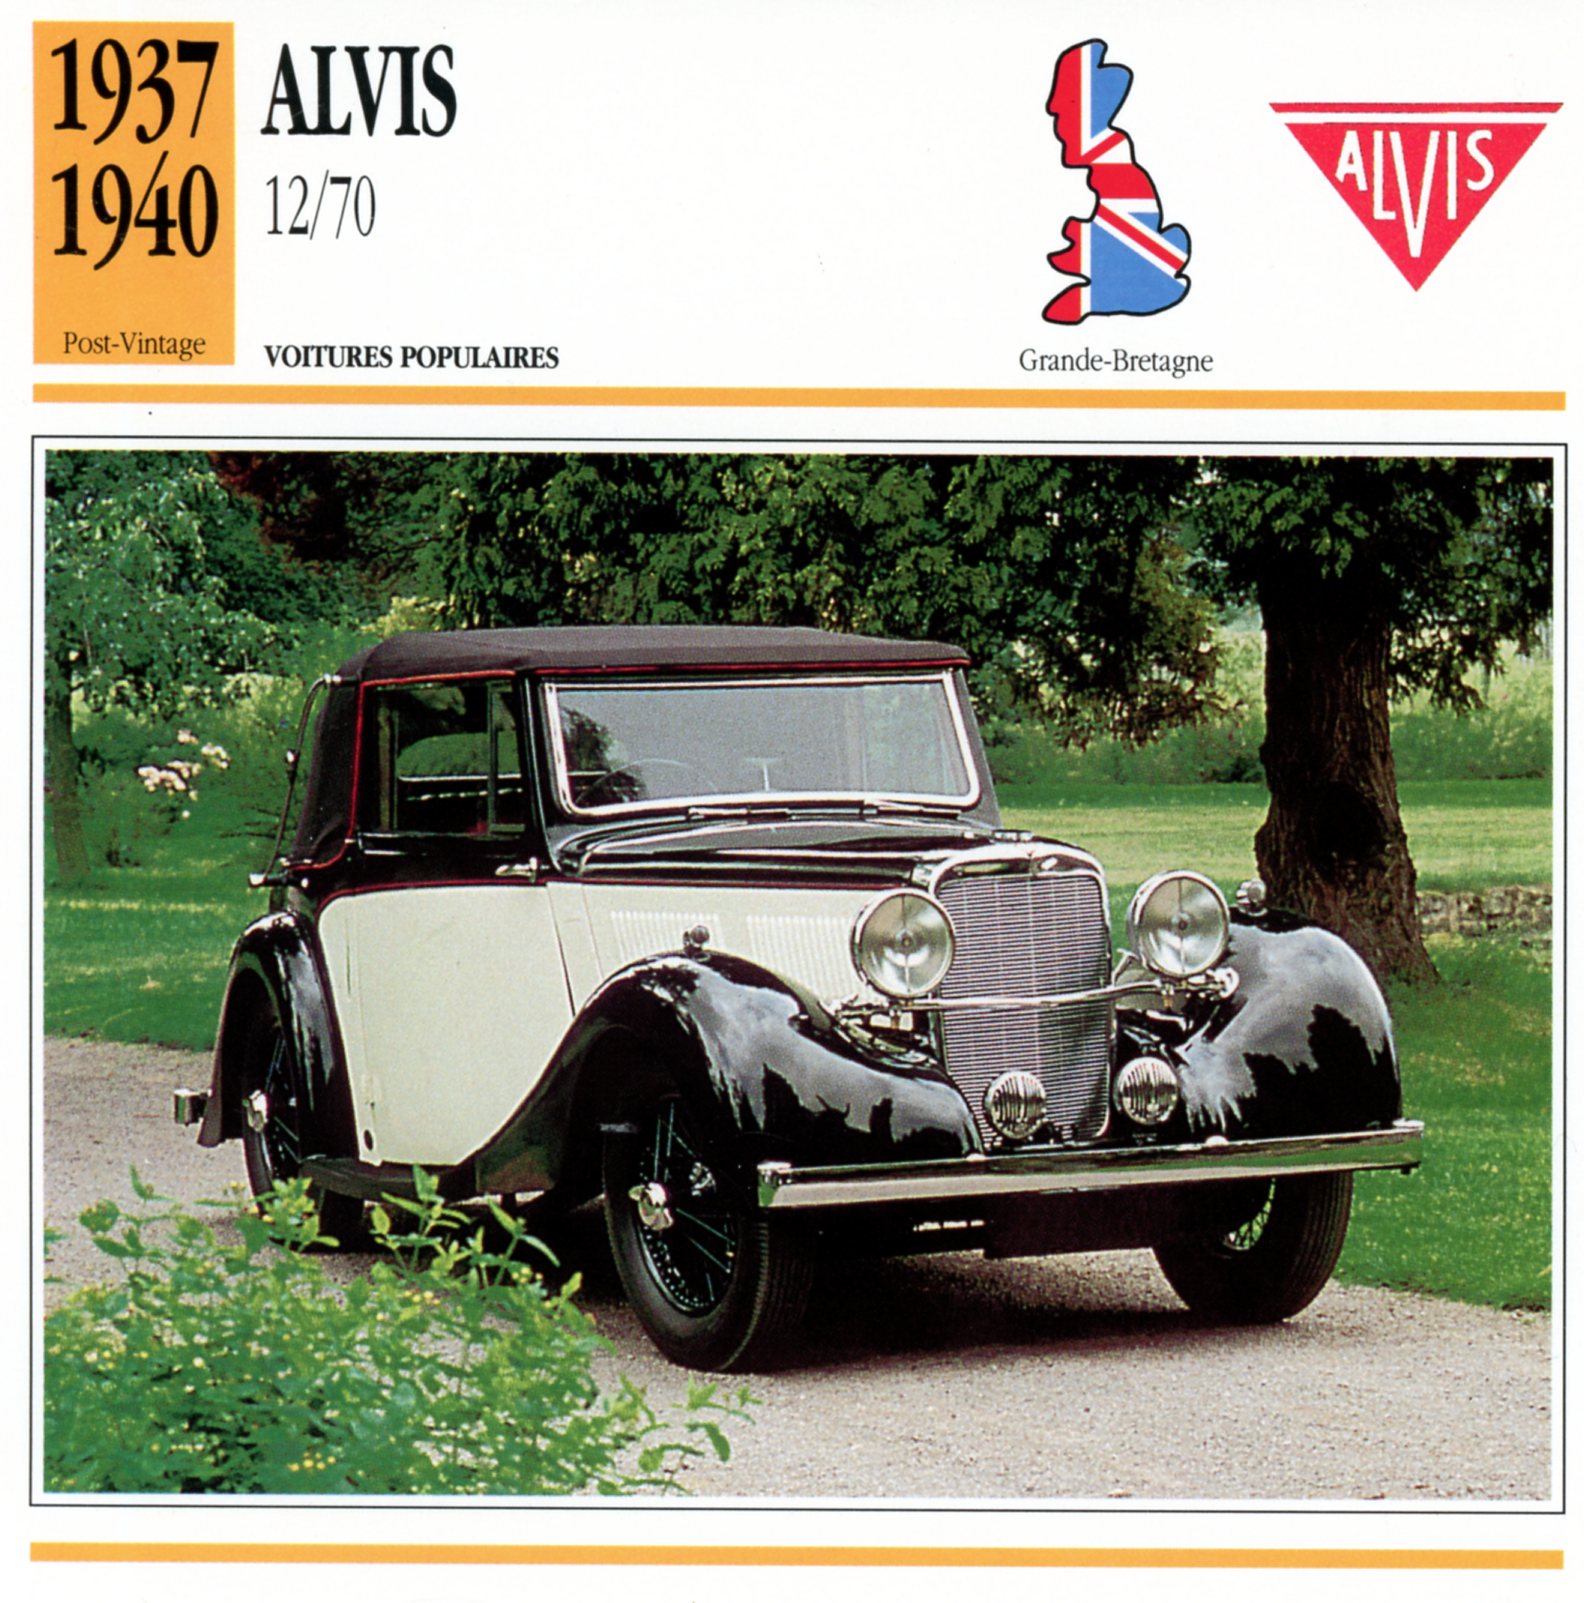 FICHE-AUTO-CARACTÉRISTIQUES-ALVIS-12/70-LEMASTERBROCKERS-CARS-CARD